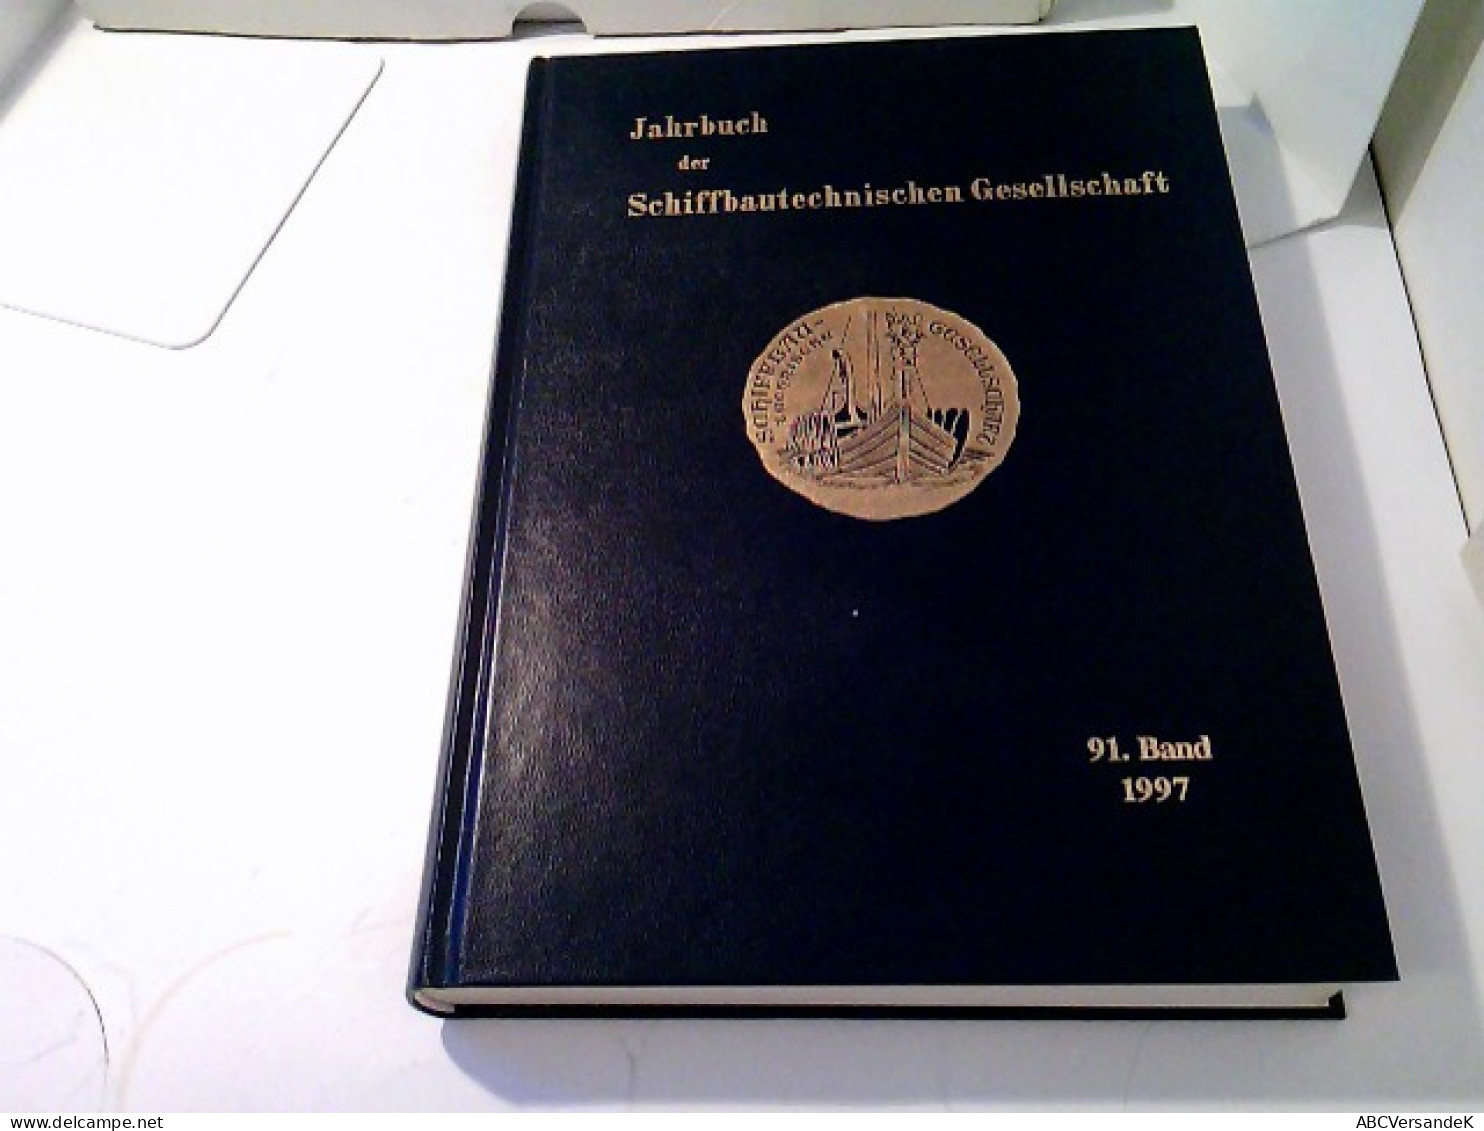 Jahrbuch Der Schiffbautechnischen Gesellschaft 91.Band 1997 - Transport